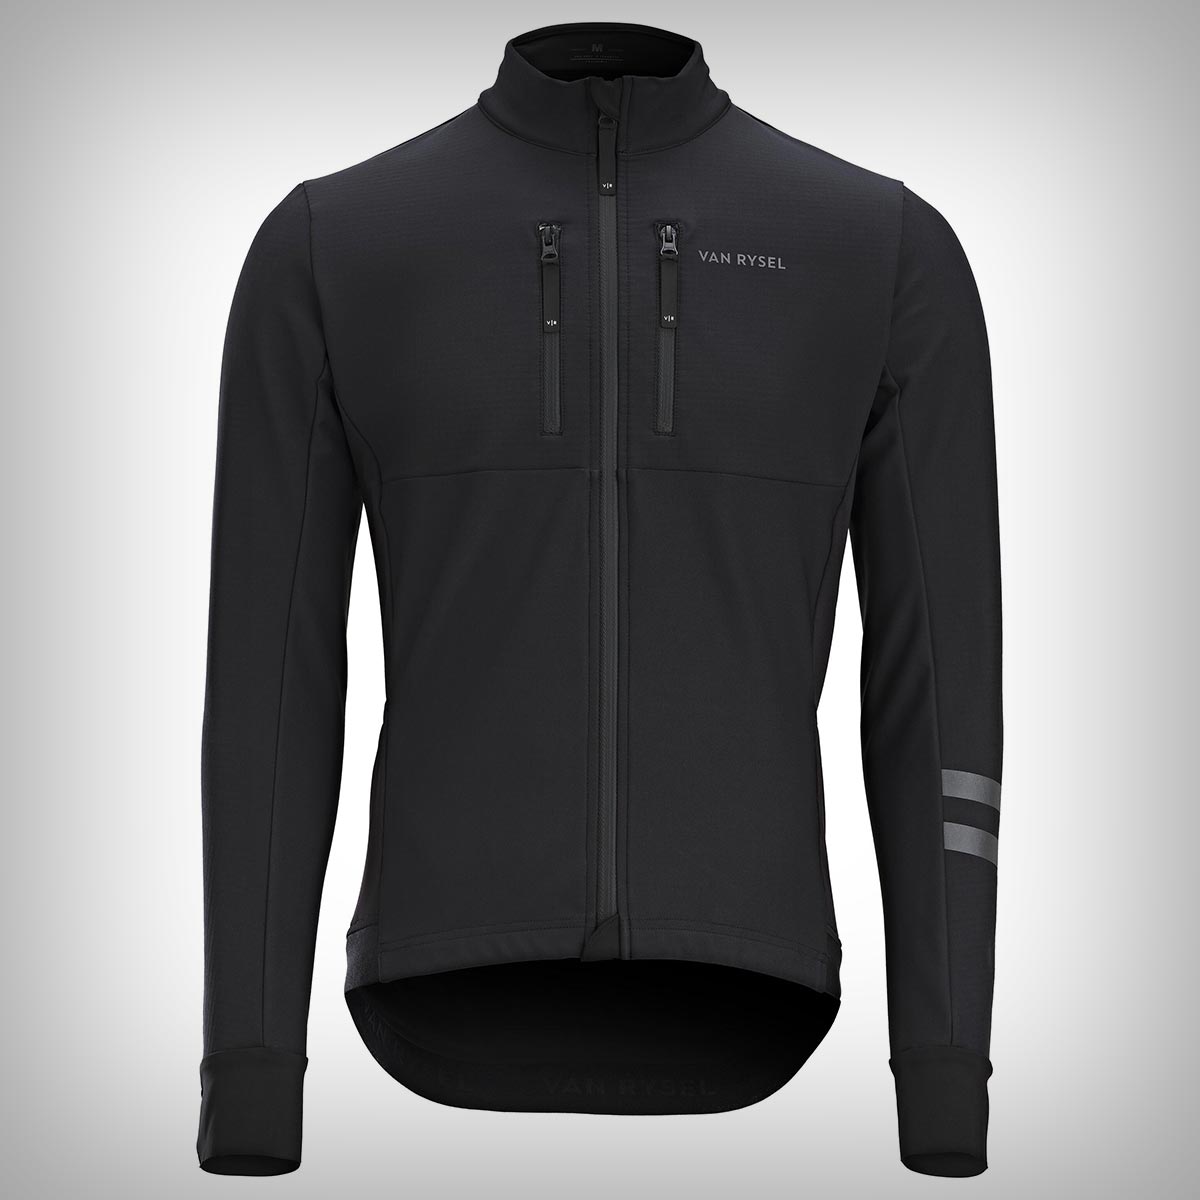 Van Rysel Endurance, la mejor chaqueta de ciclismo para protegerse de la lluvia, el frío y el viento sin pagar de más